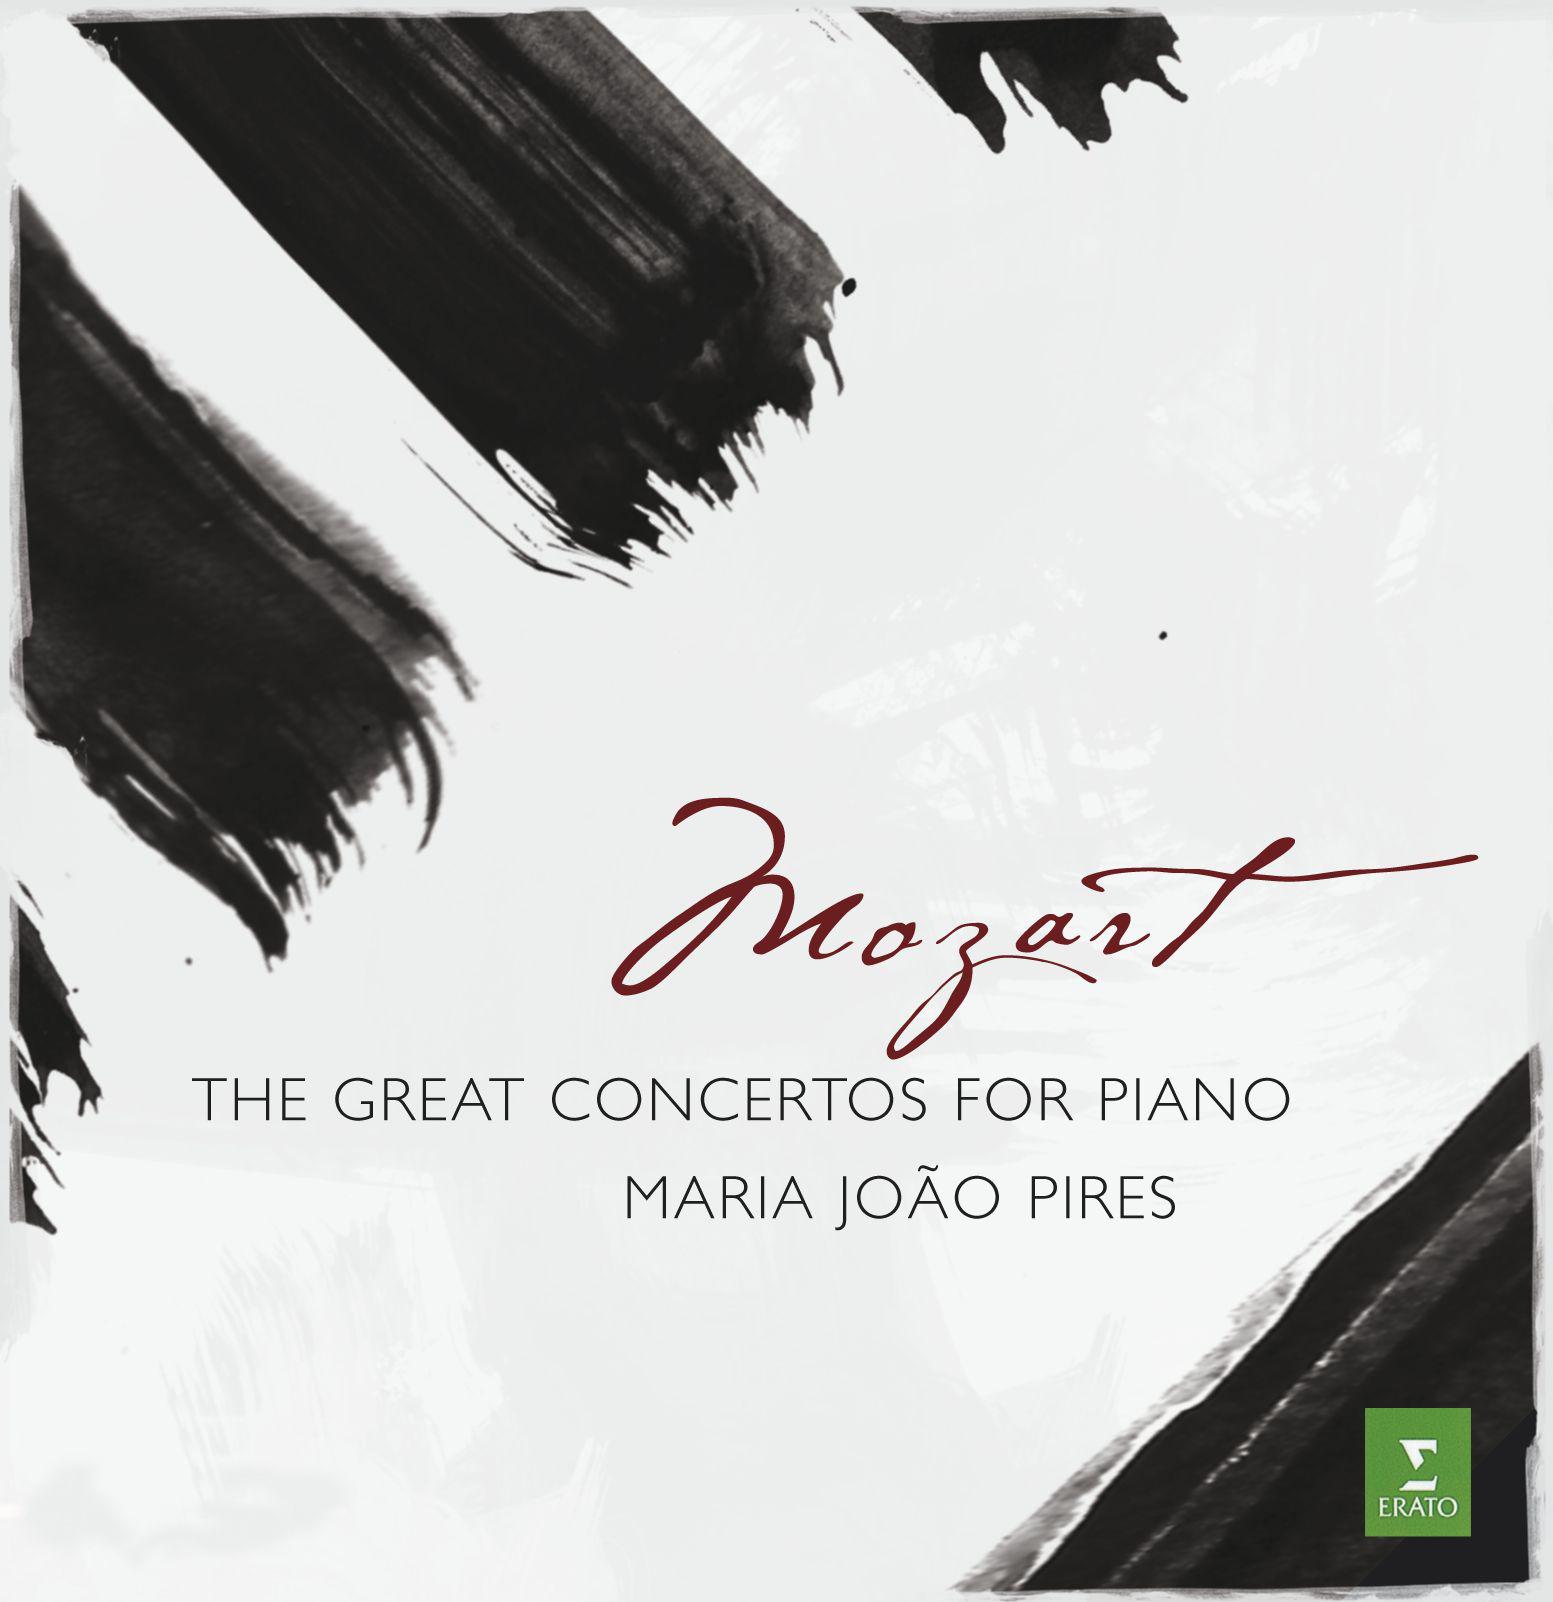 Piano Concerto No. 19 in F Major, K. 459:III. Allegro assai